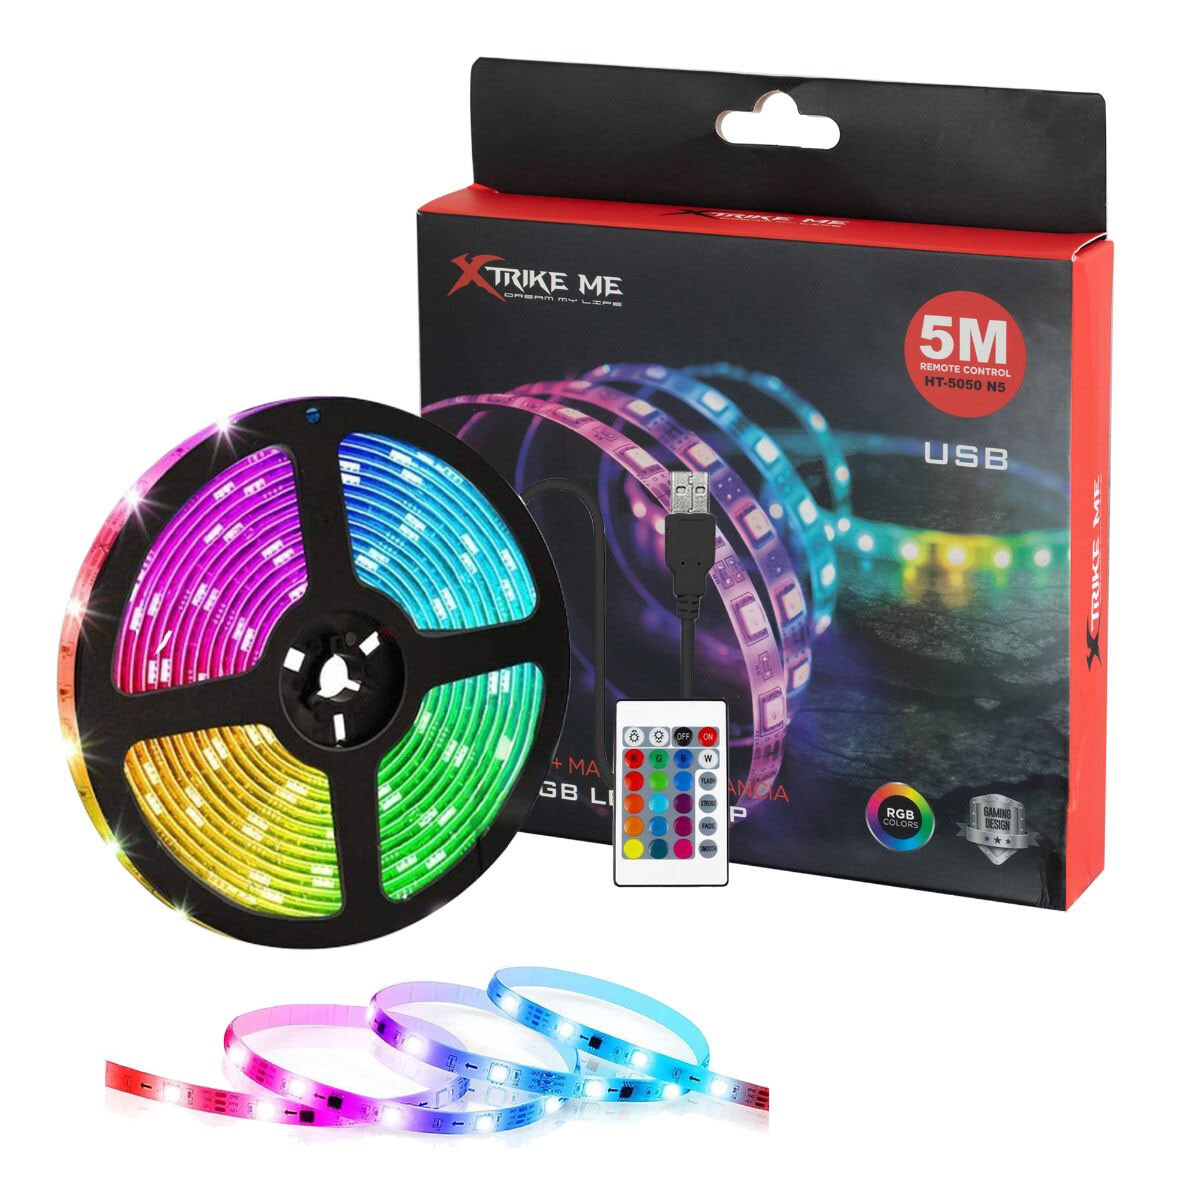 Rollo Cinta Led de Luces RGB 5Mt c/ Control y USB XTrike Me - Multicolor 